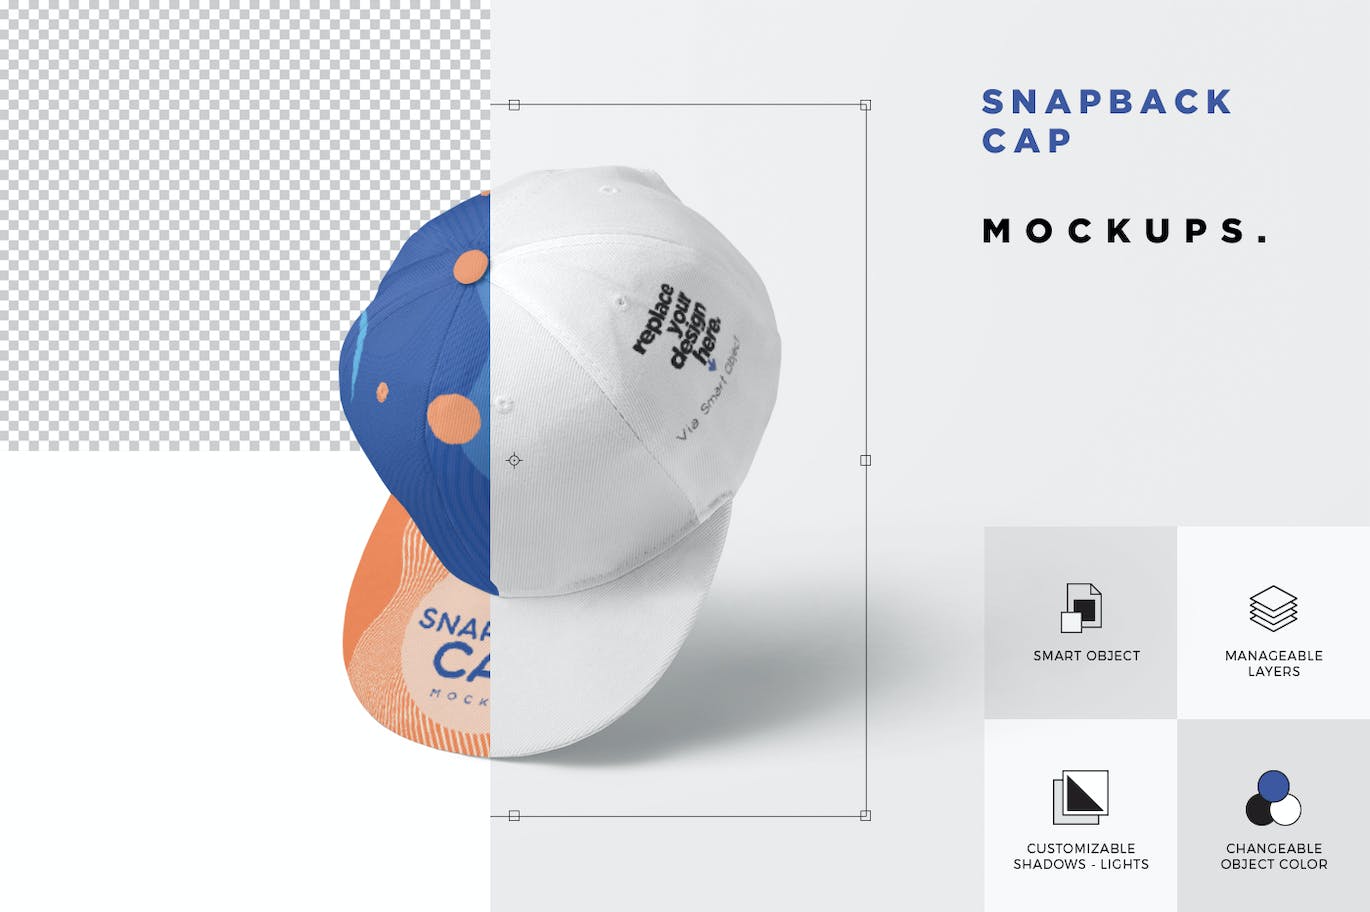 棒球帽运动品牌设计样机 Snapback Cap Mockups 样机素材 第4张